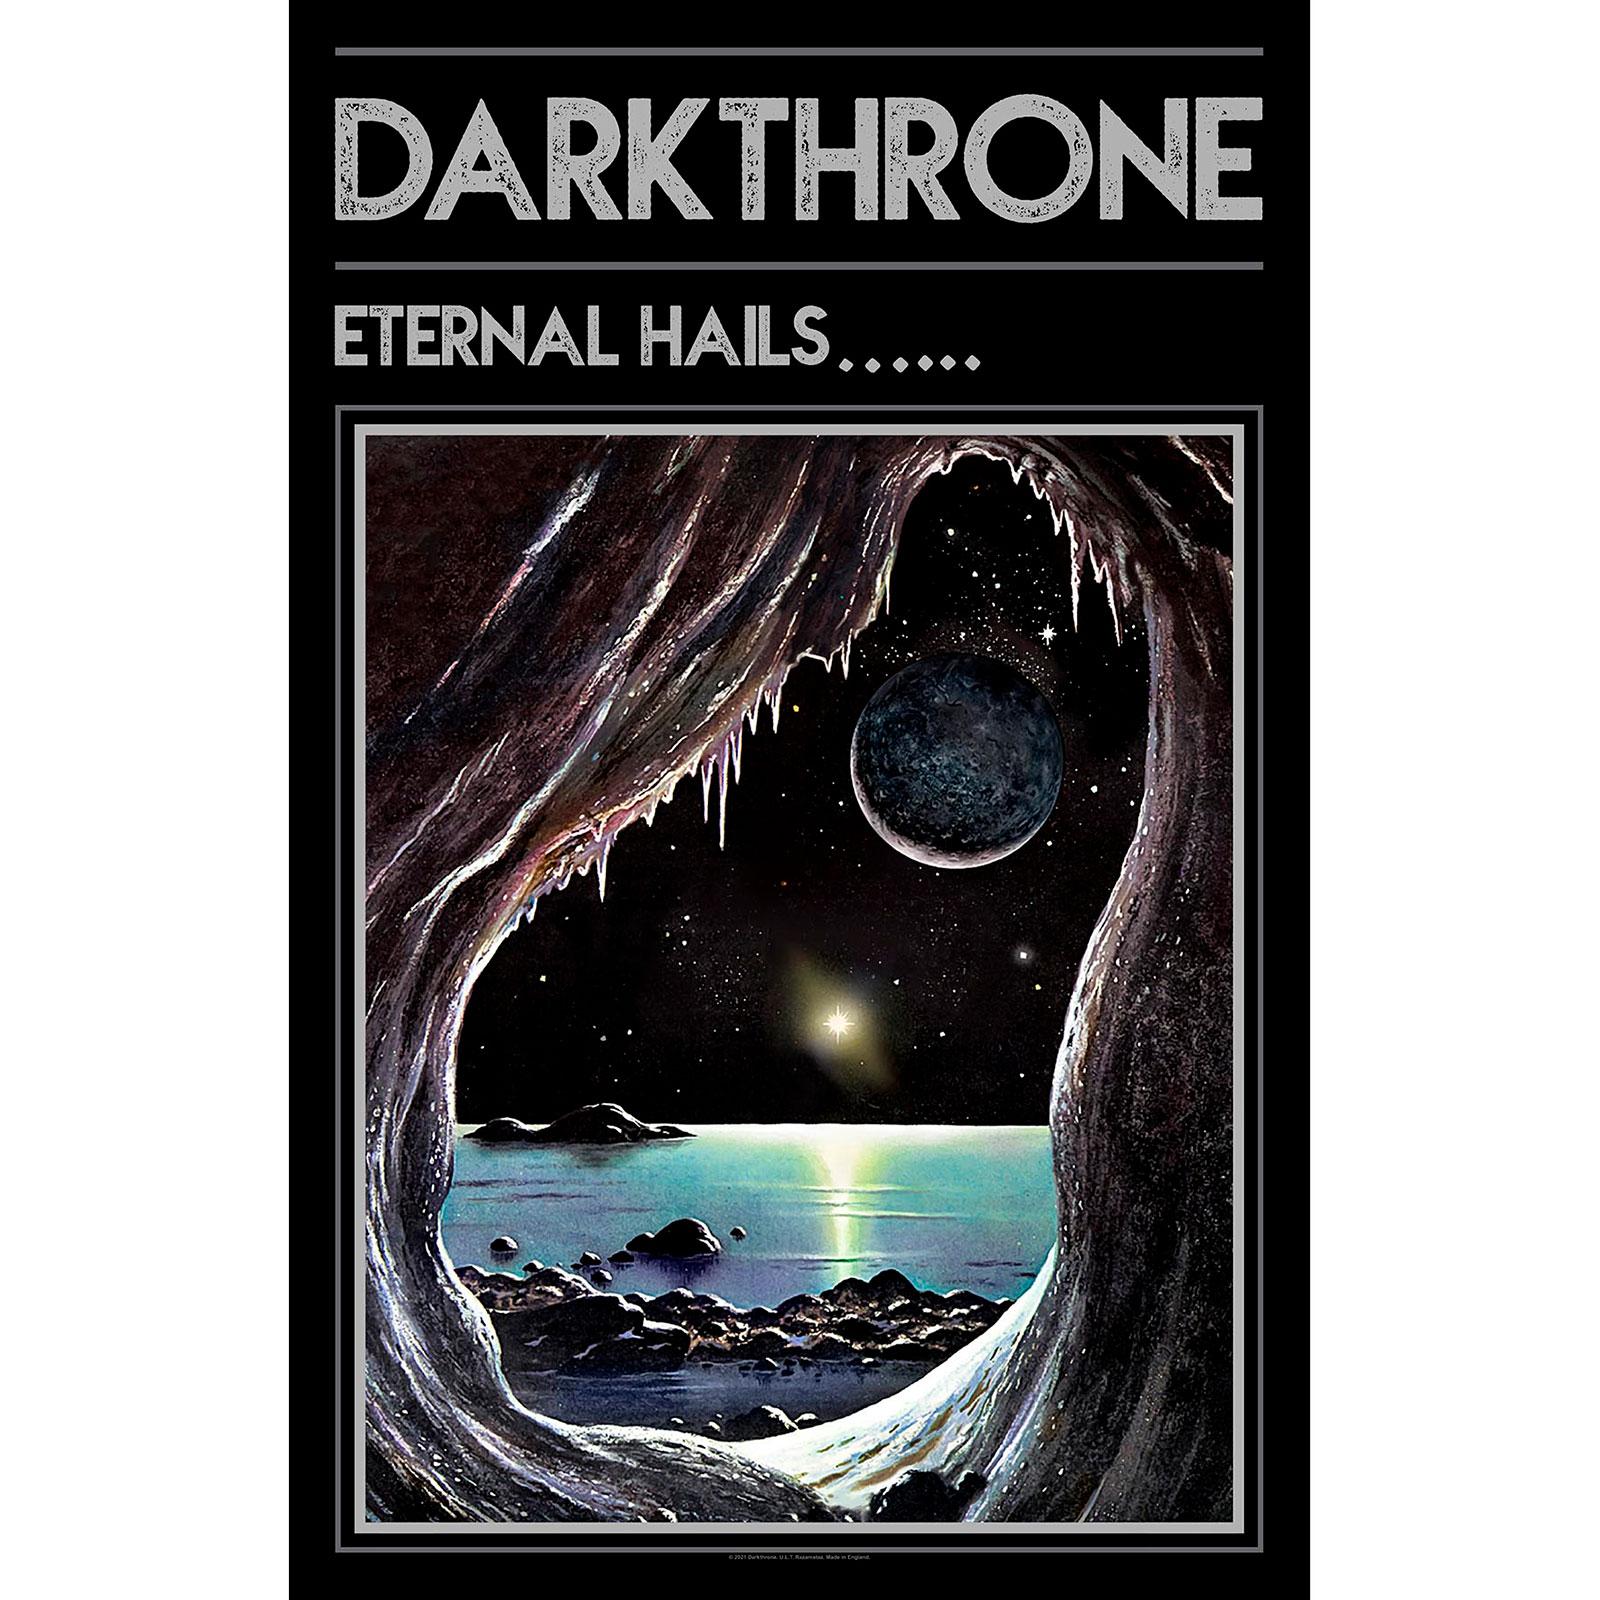 (ダークスローン) Darkthrone オフィシャル商品 Eternal Hails テキスタイルポスター 布製 ポスター 【..